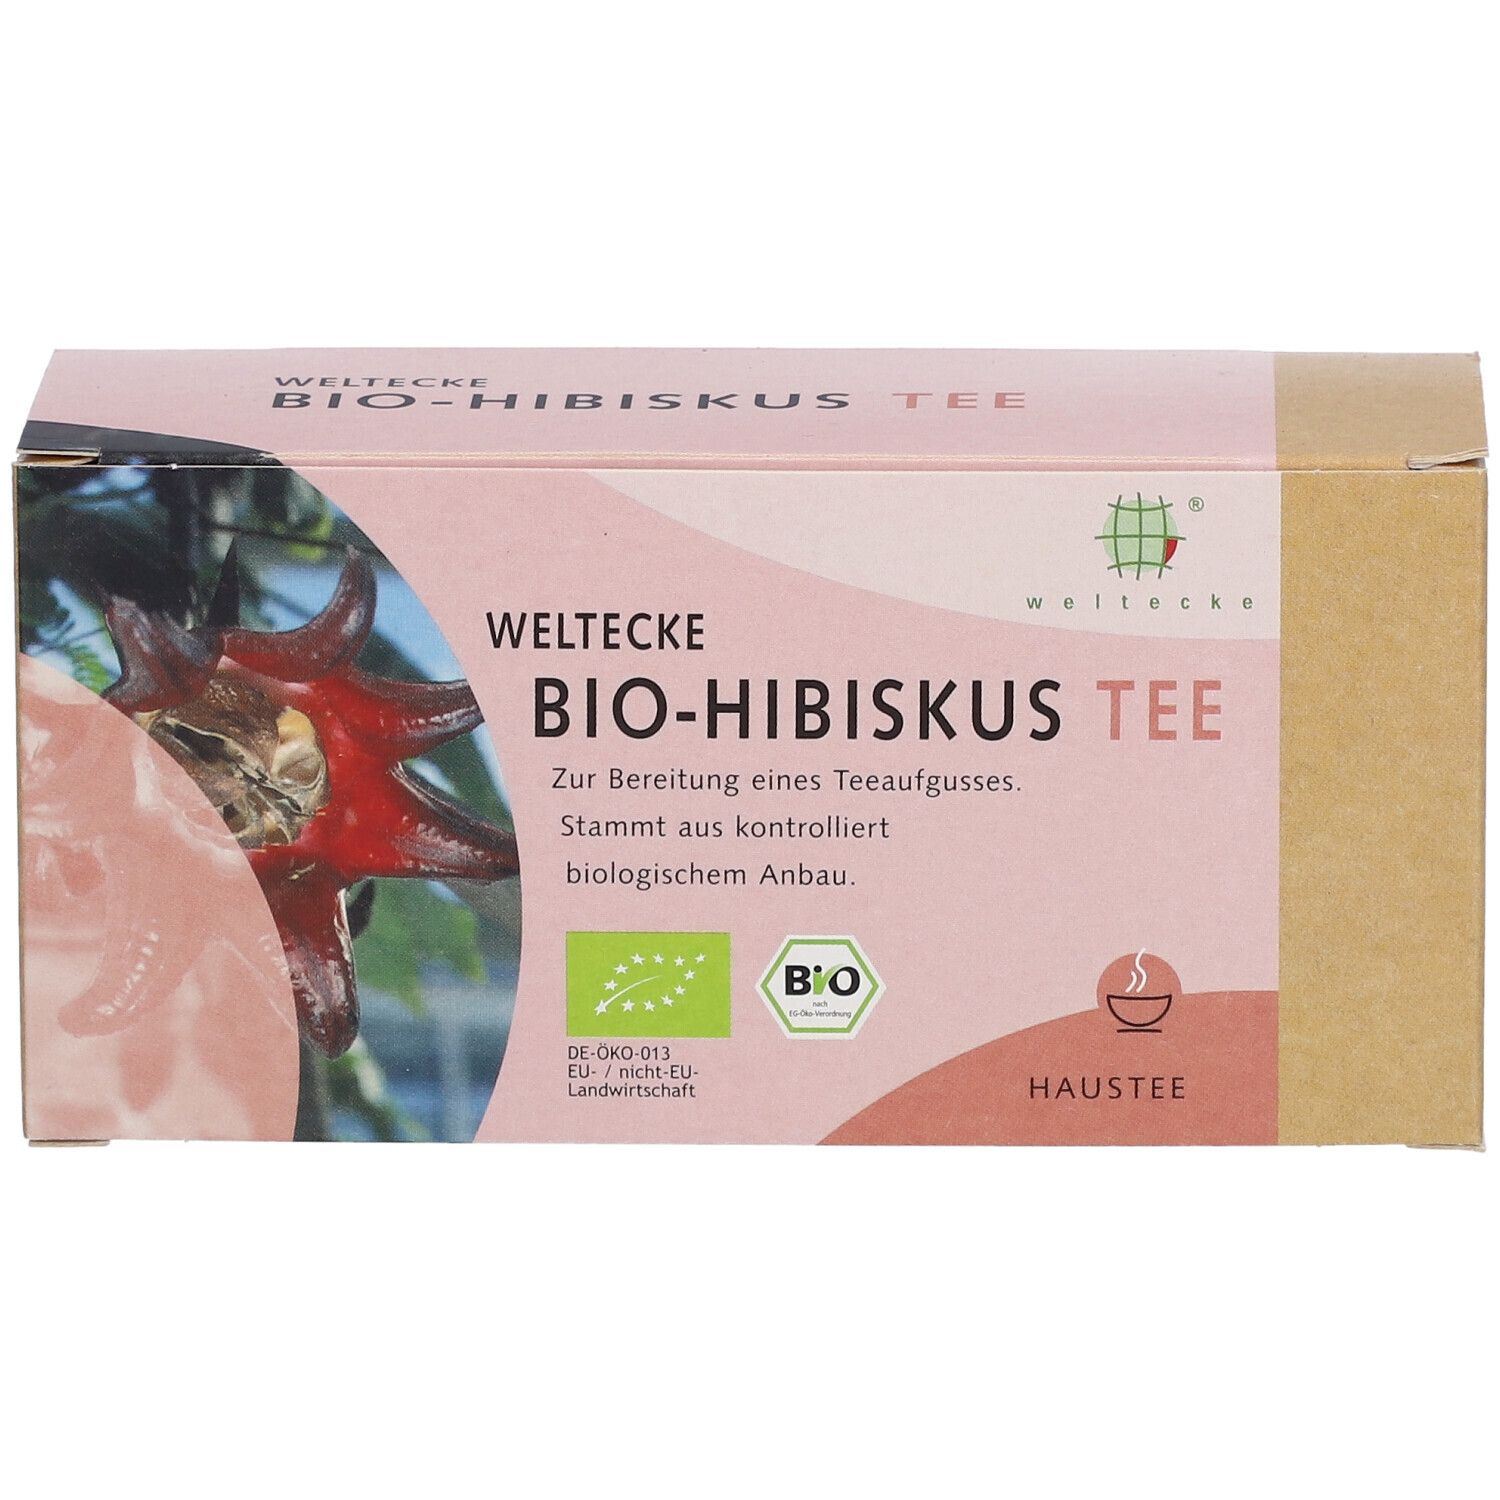 Bio Thé à l'hibiscus